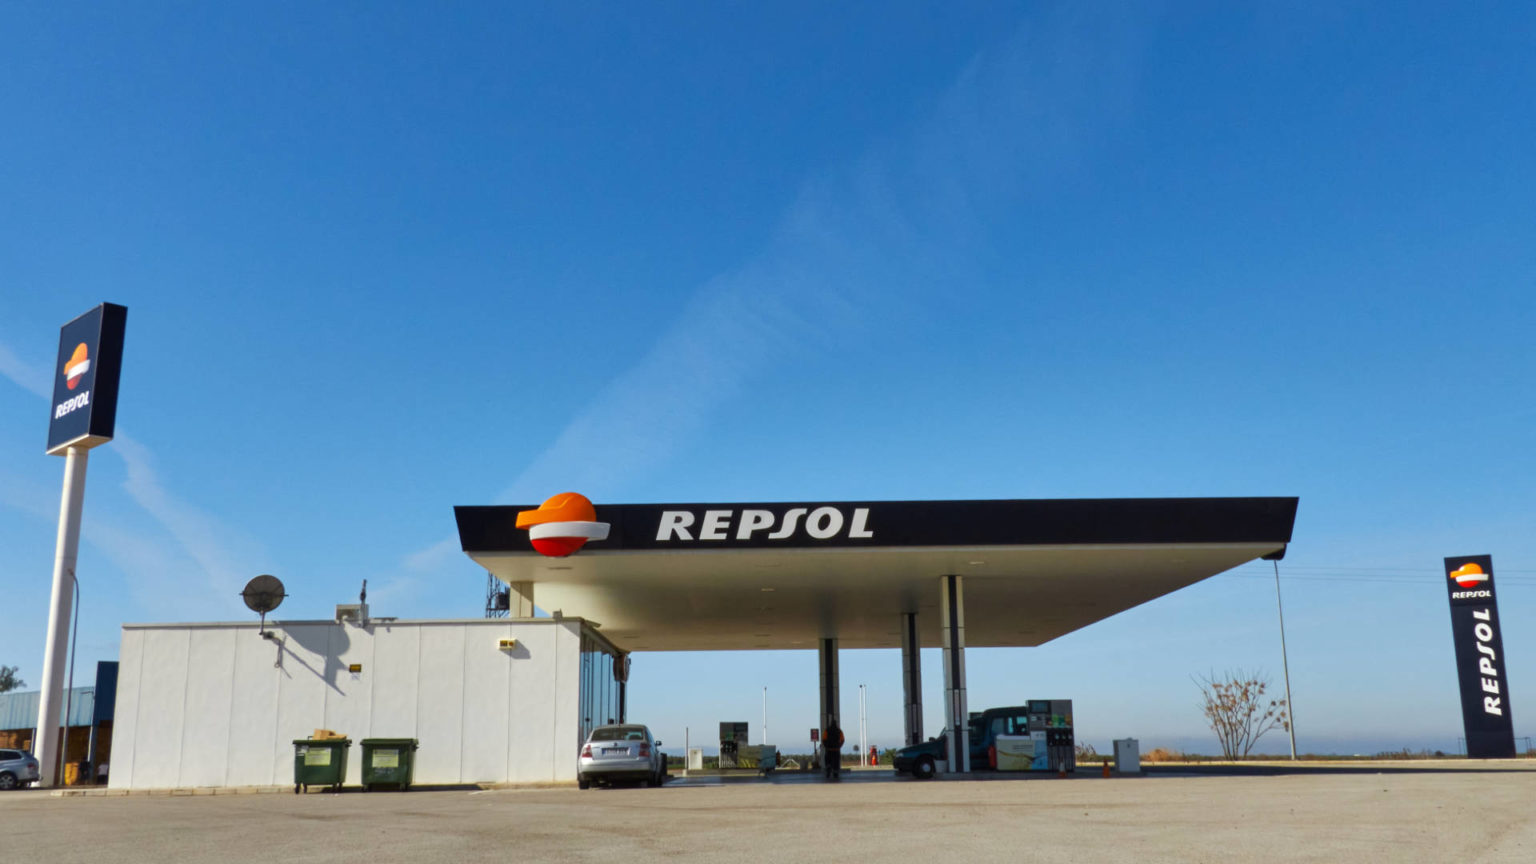 In Andalusien wird es weit und einsam – auch an den Tankstellen.